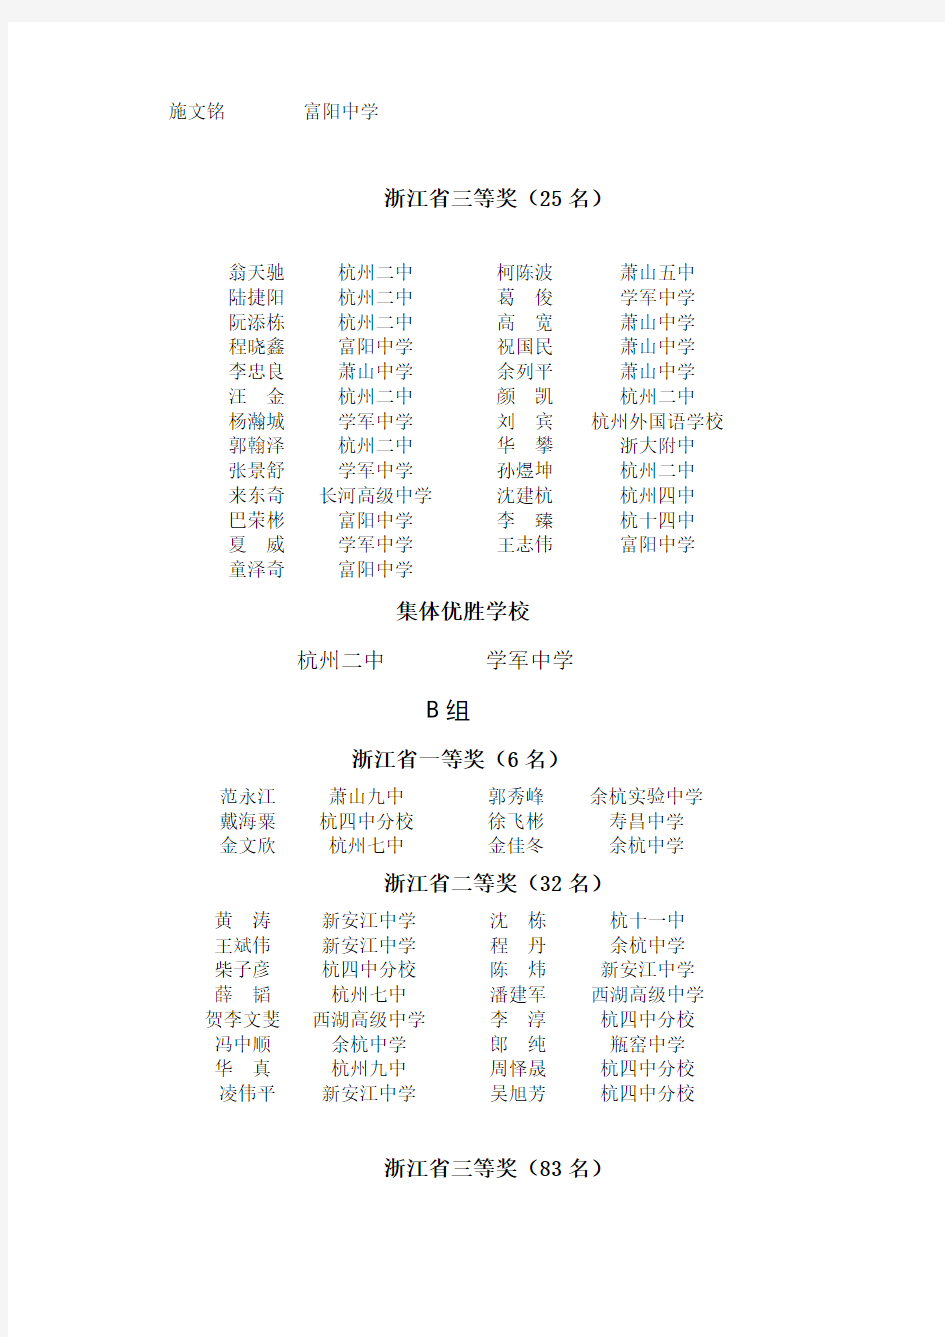 2007年浙江省高中学生化学竞赛杭州市学生获奖名单